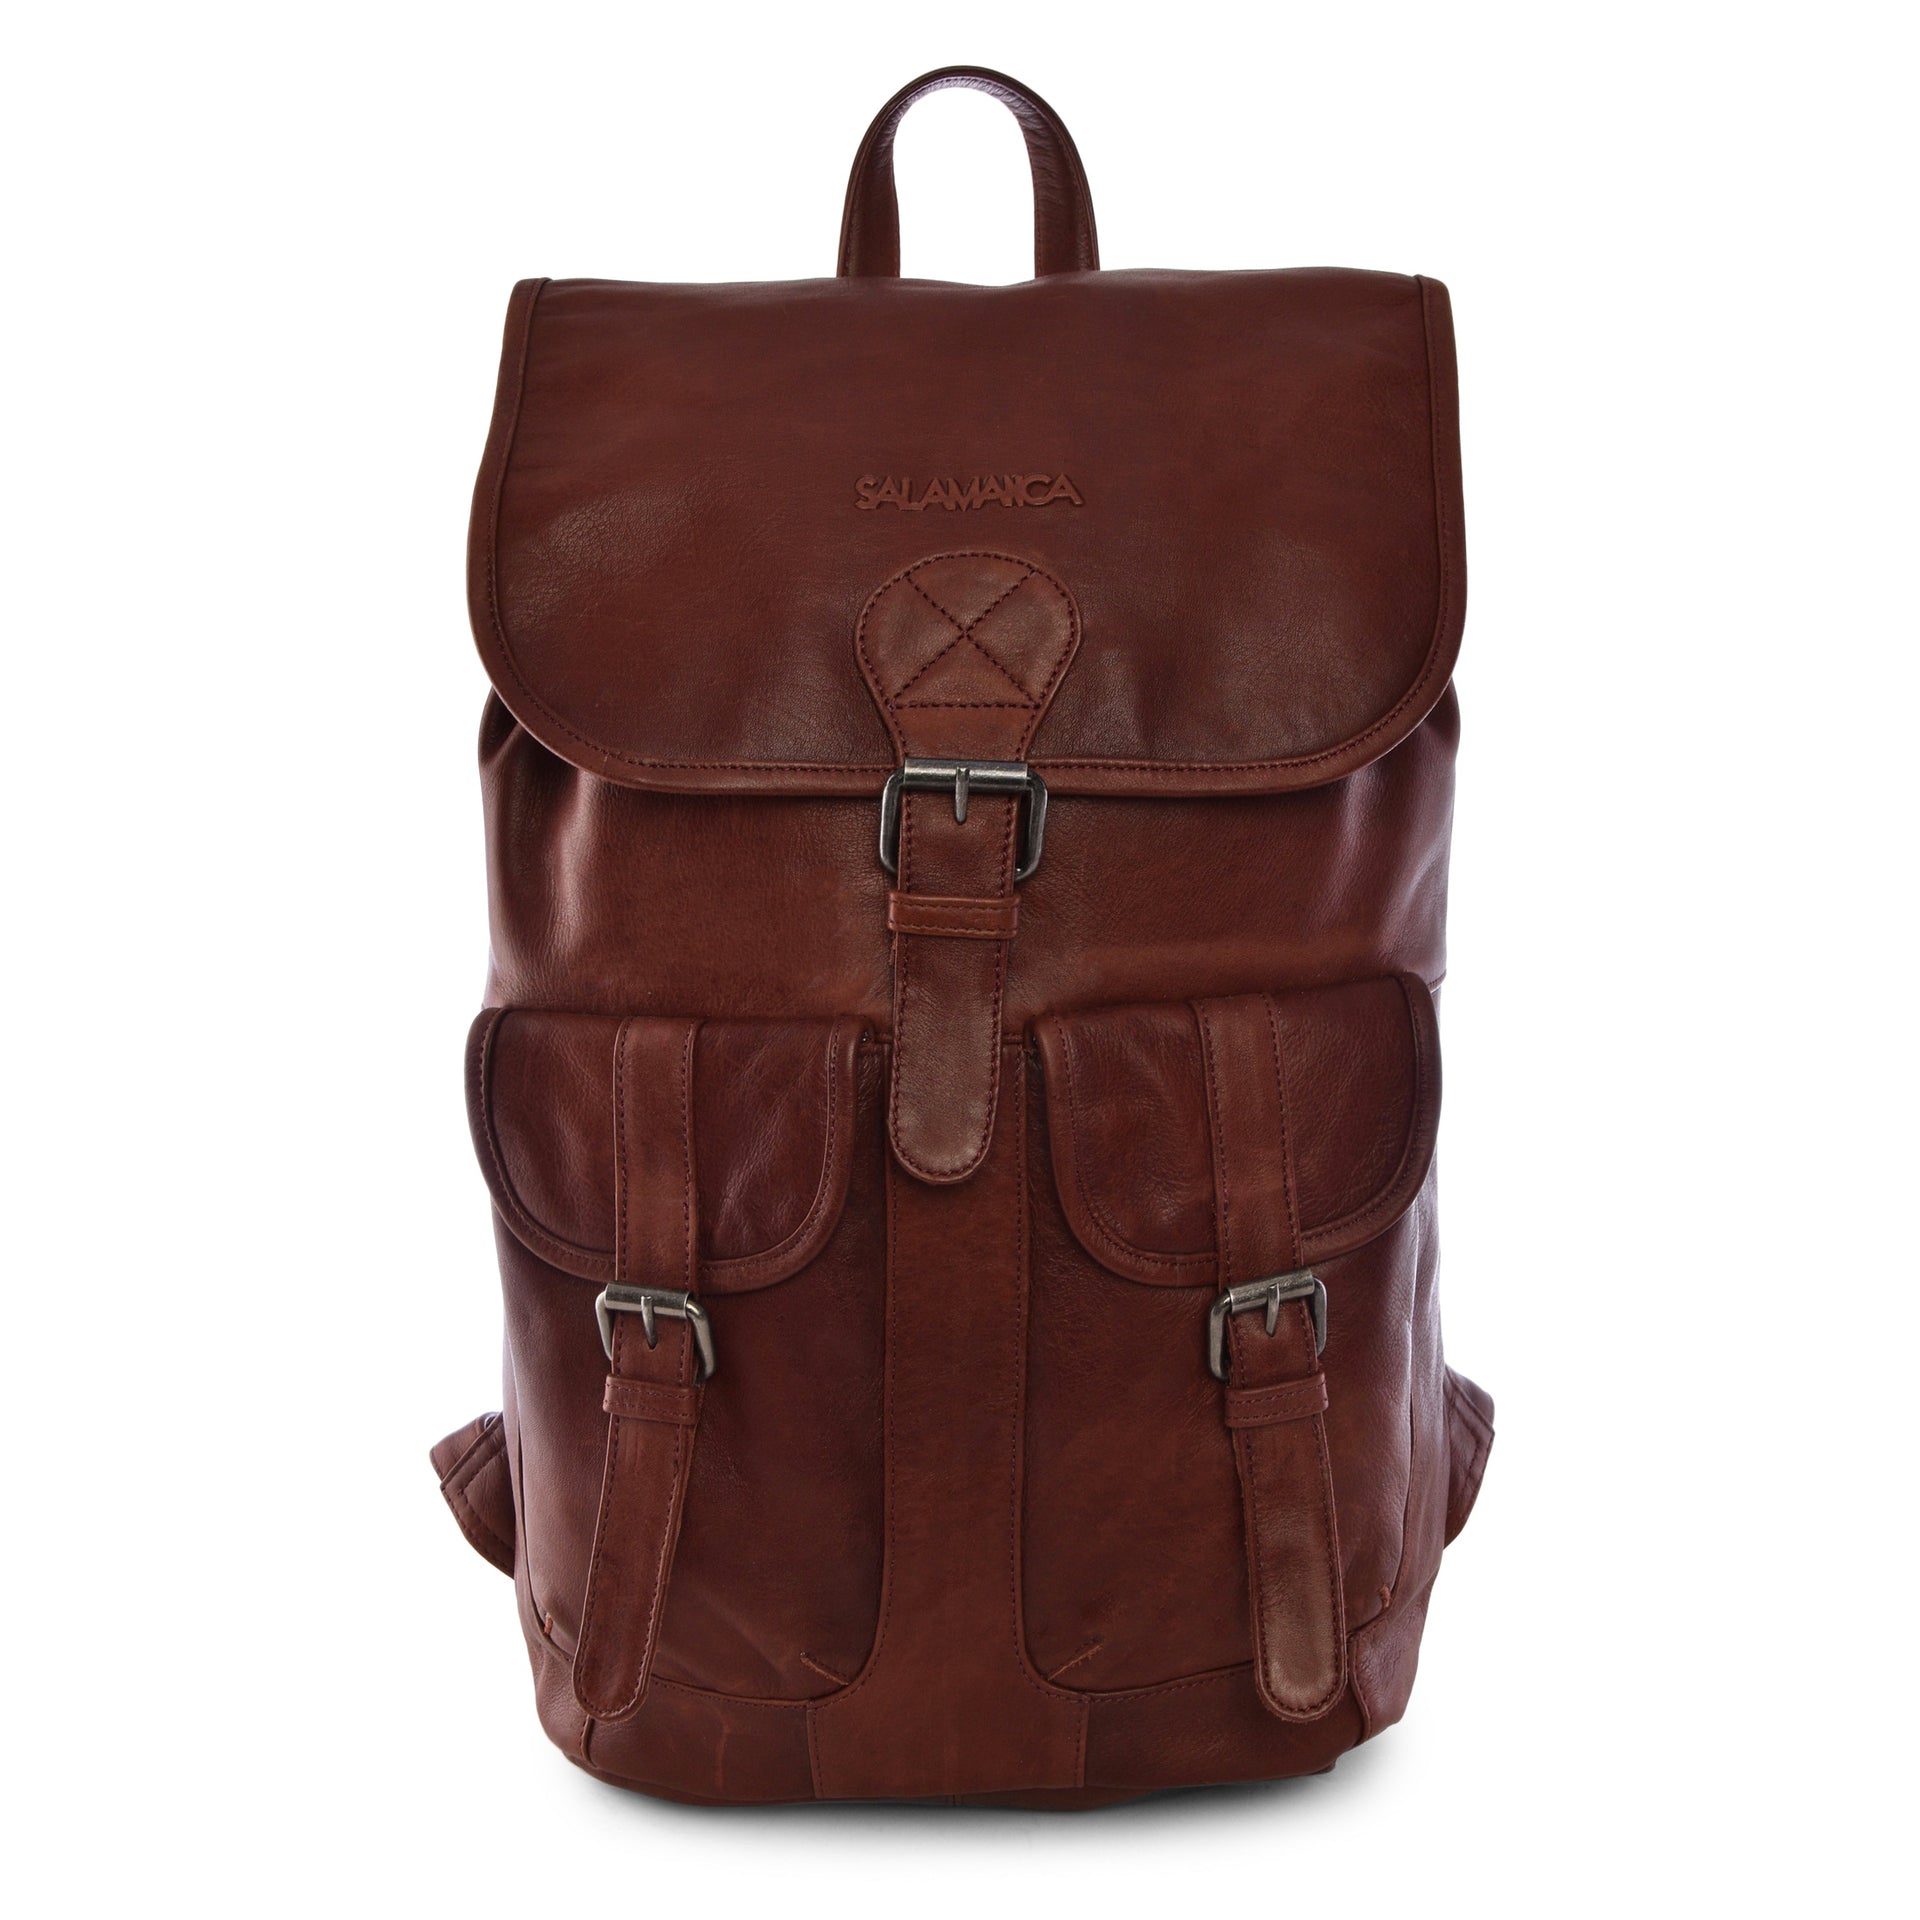 Spruce Backpack - Bordeaux - Backpack